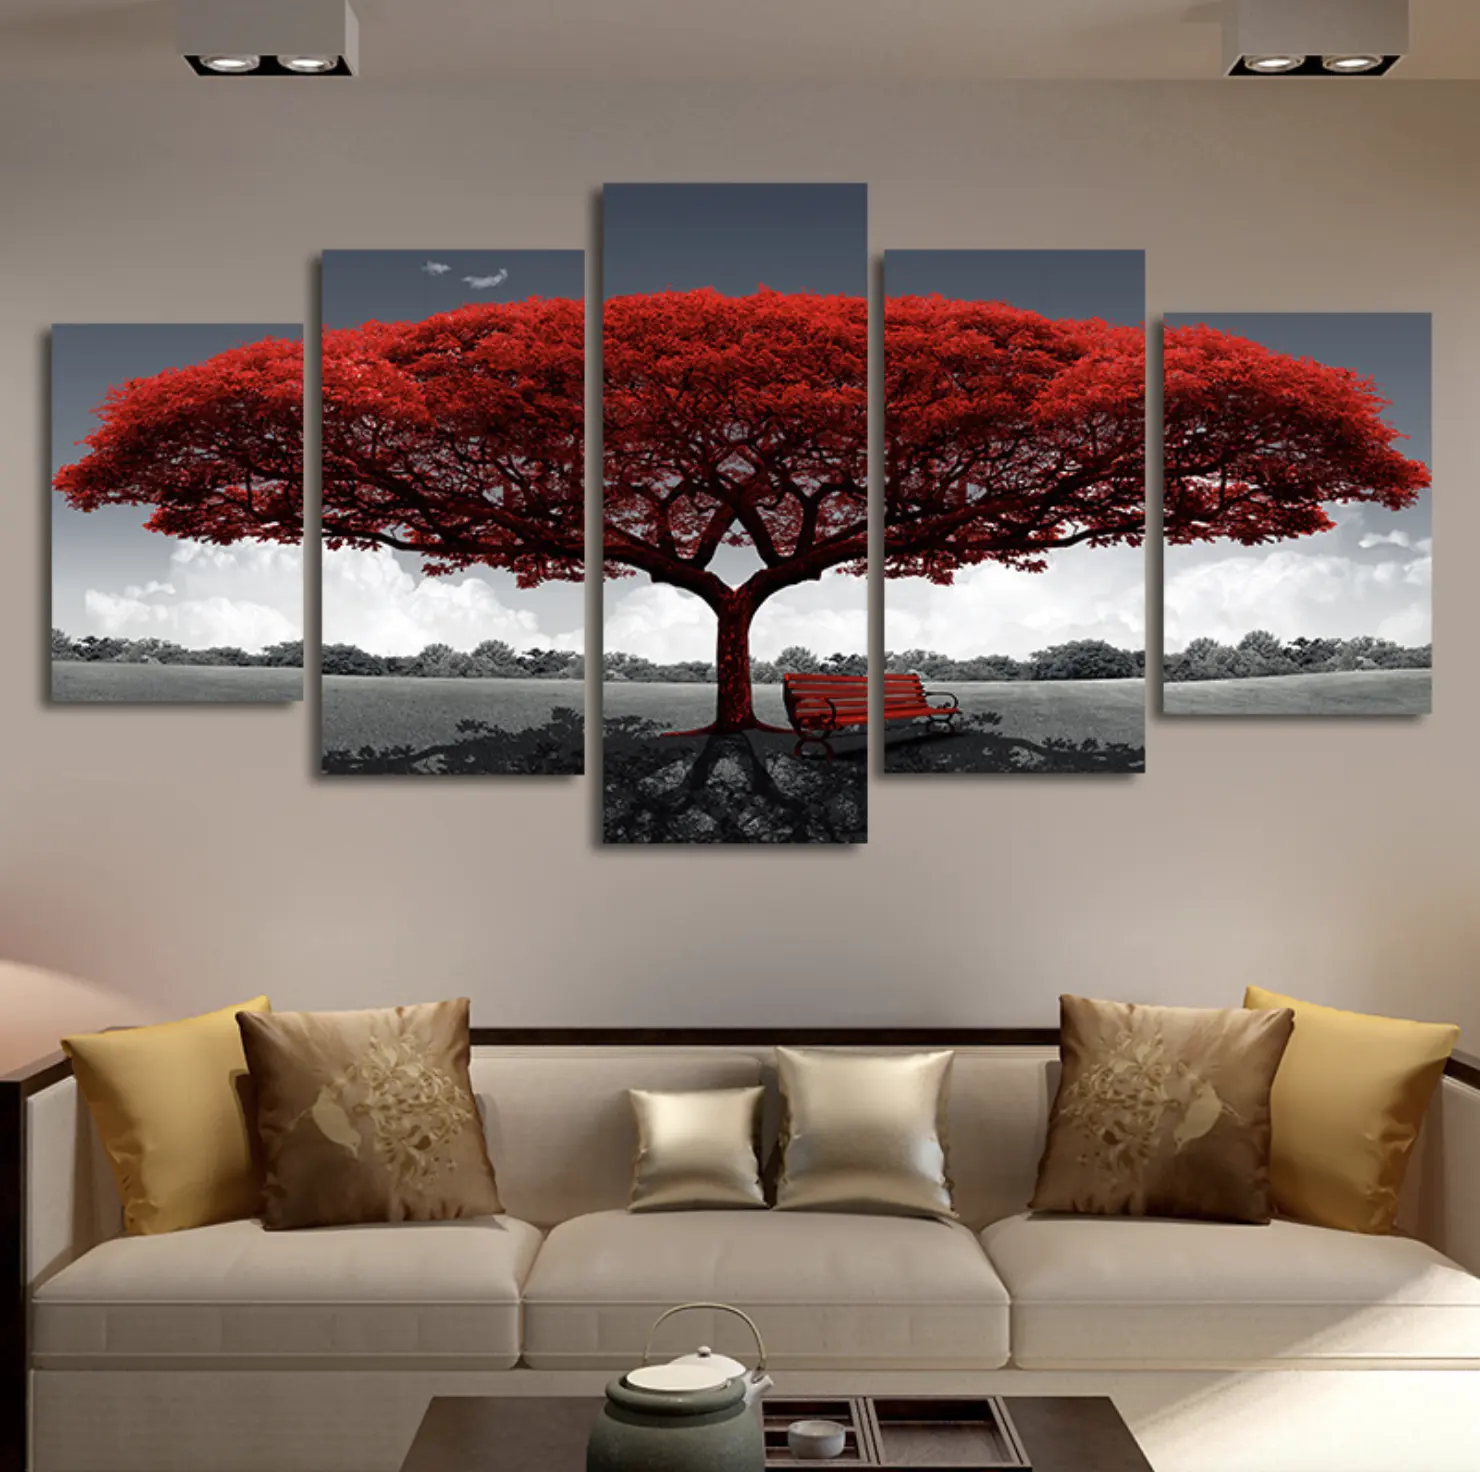 キャンバスの風景の壁のアートプリント画像にマルチパネルのモダンな自然な赤い木の絵